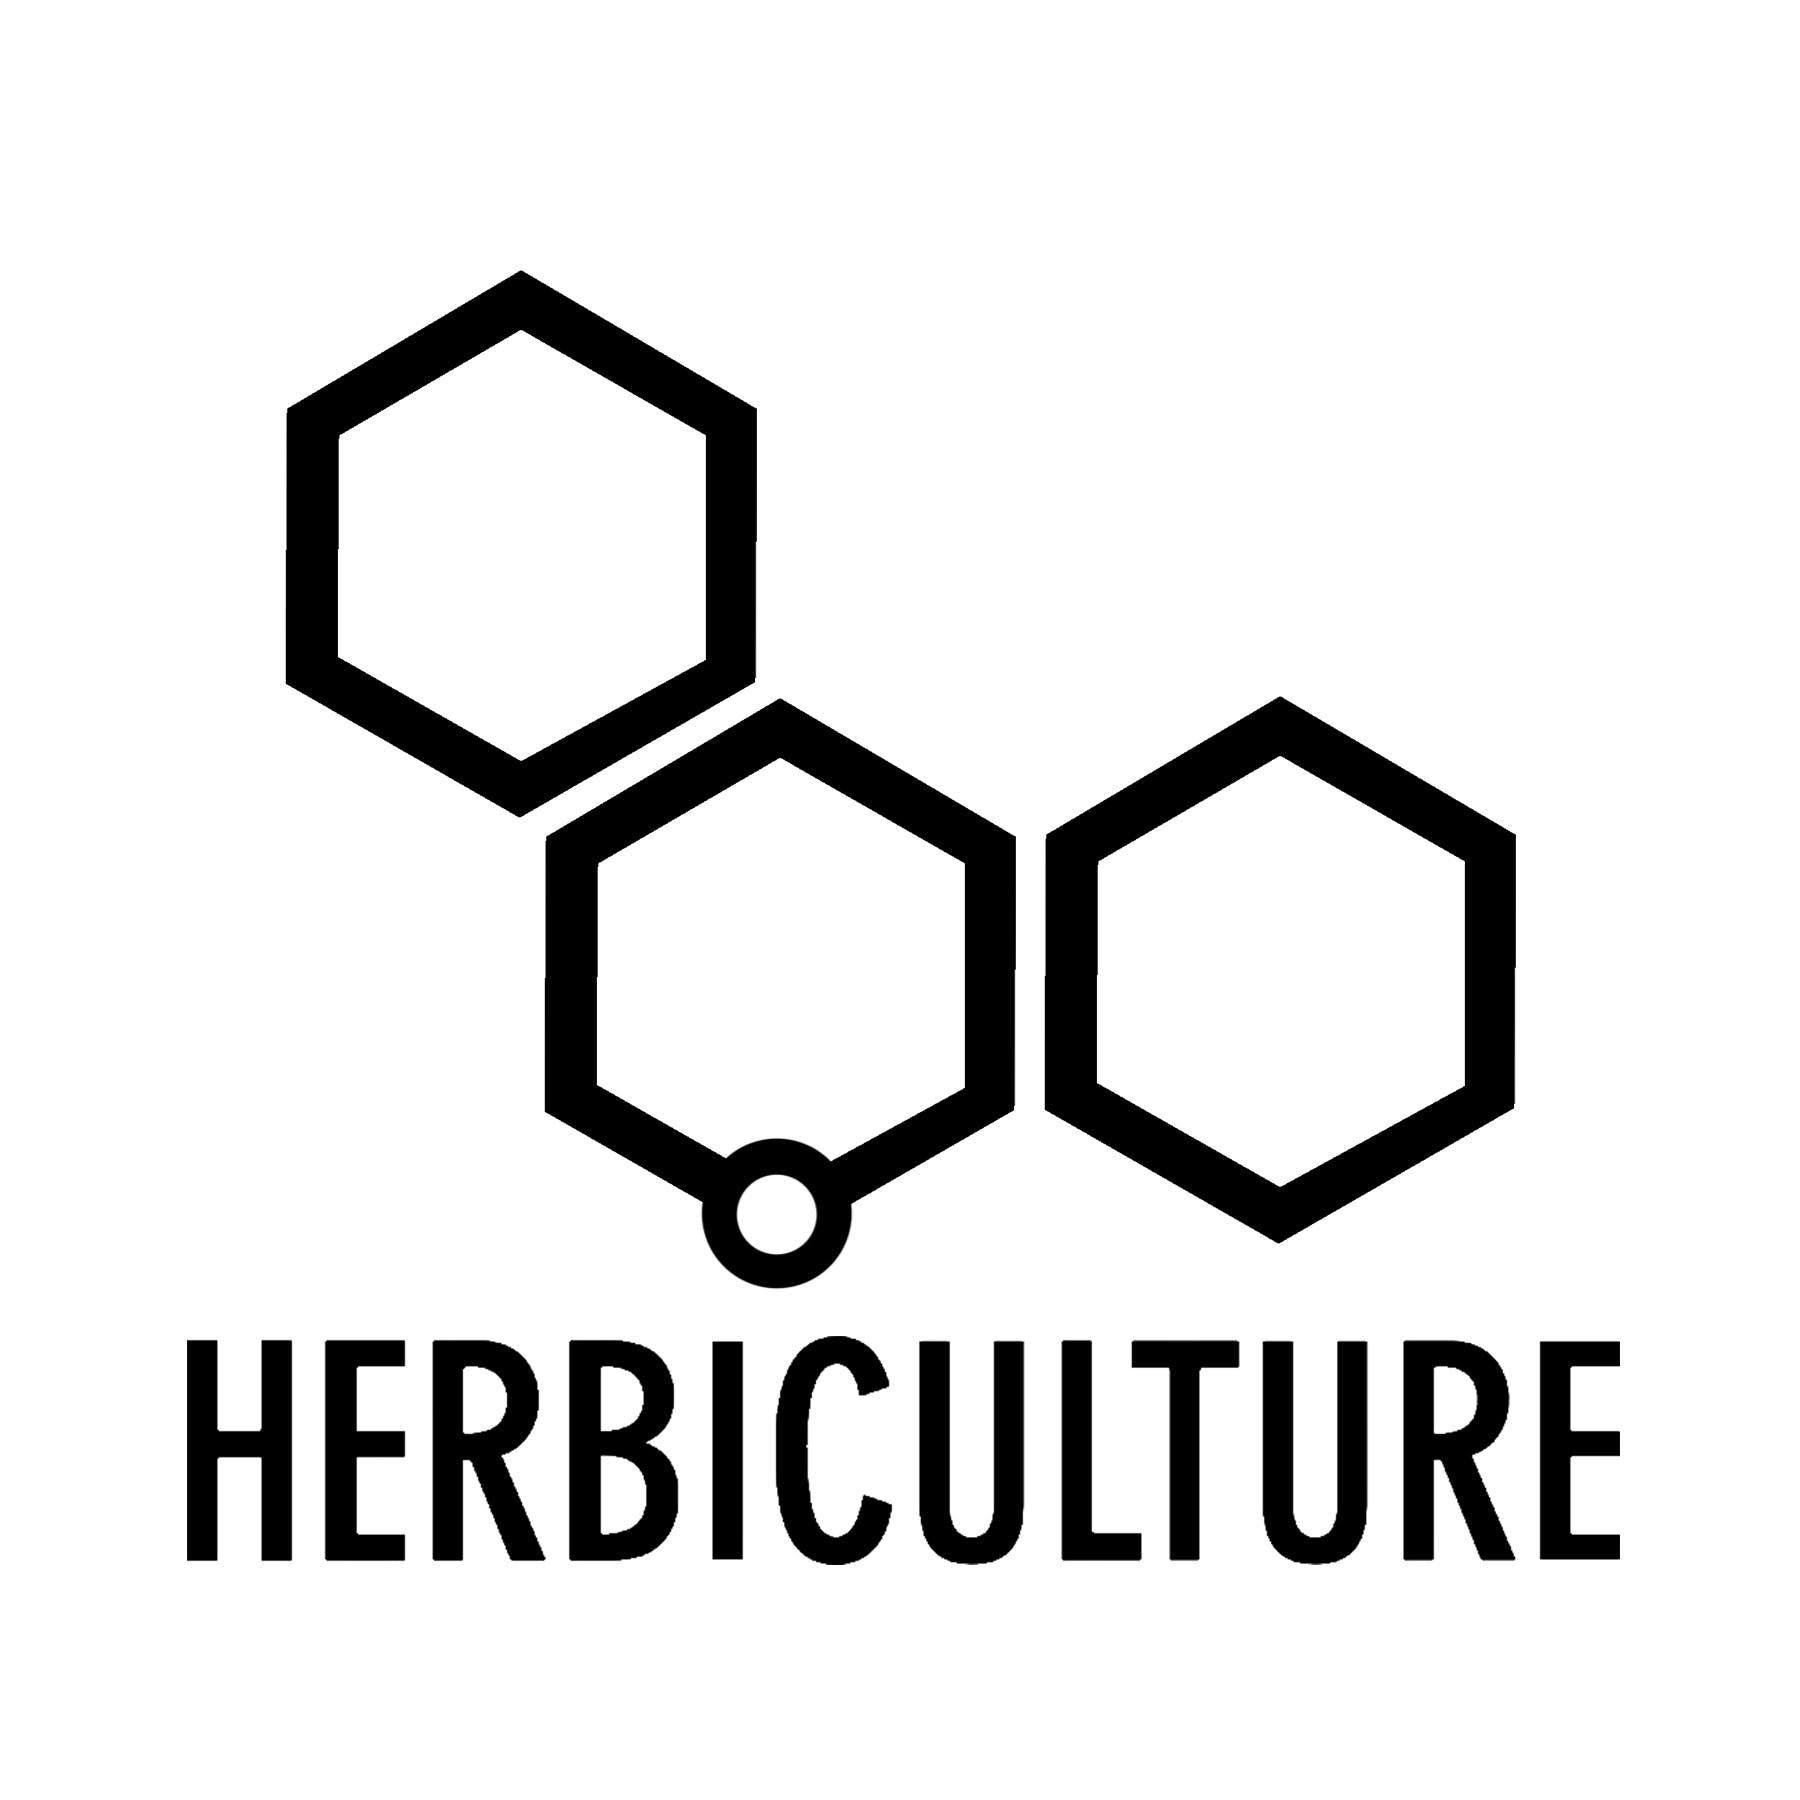 Herbiculture